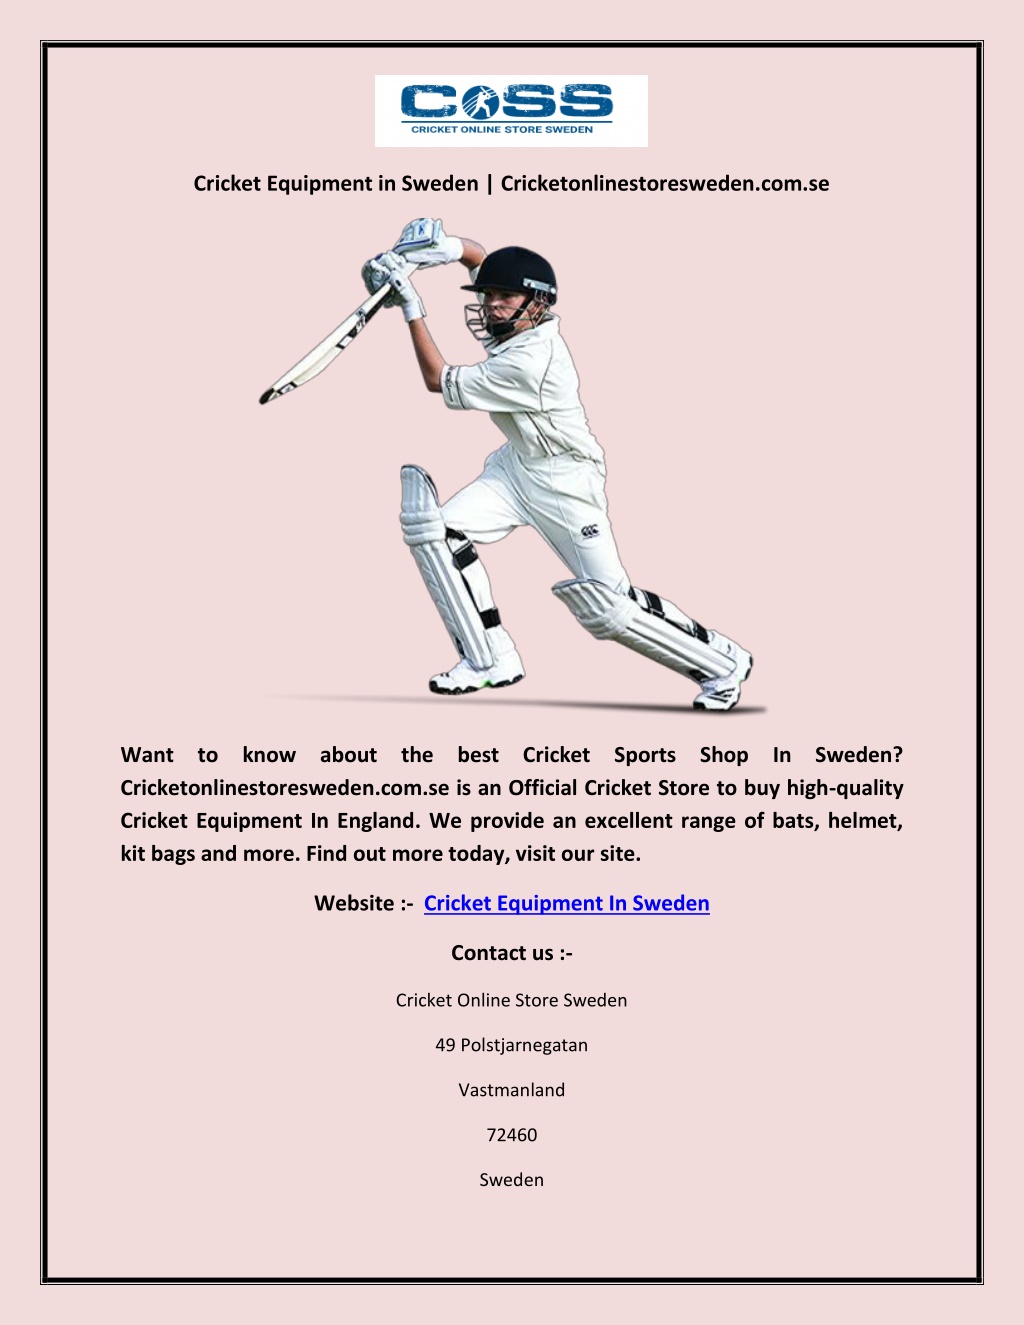 PPT - Cricket Equipment in Sweden Cricketonlinestoresweden.se PowerPoint Presentation